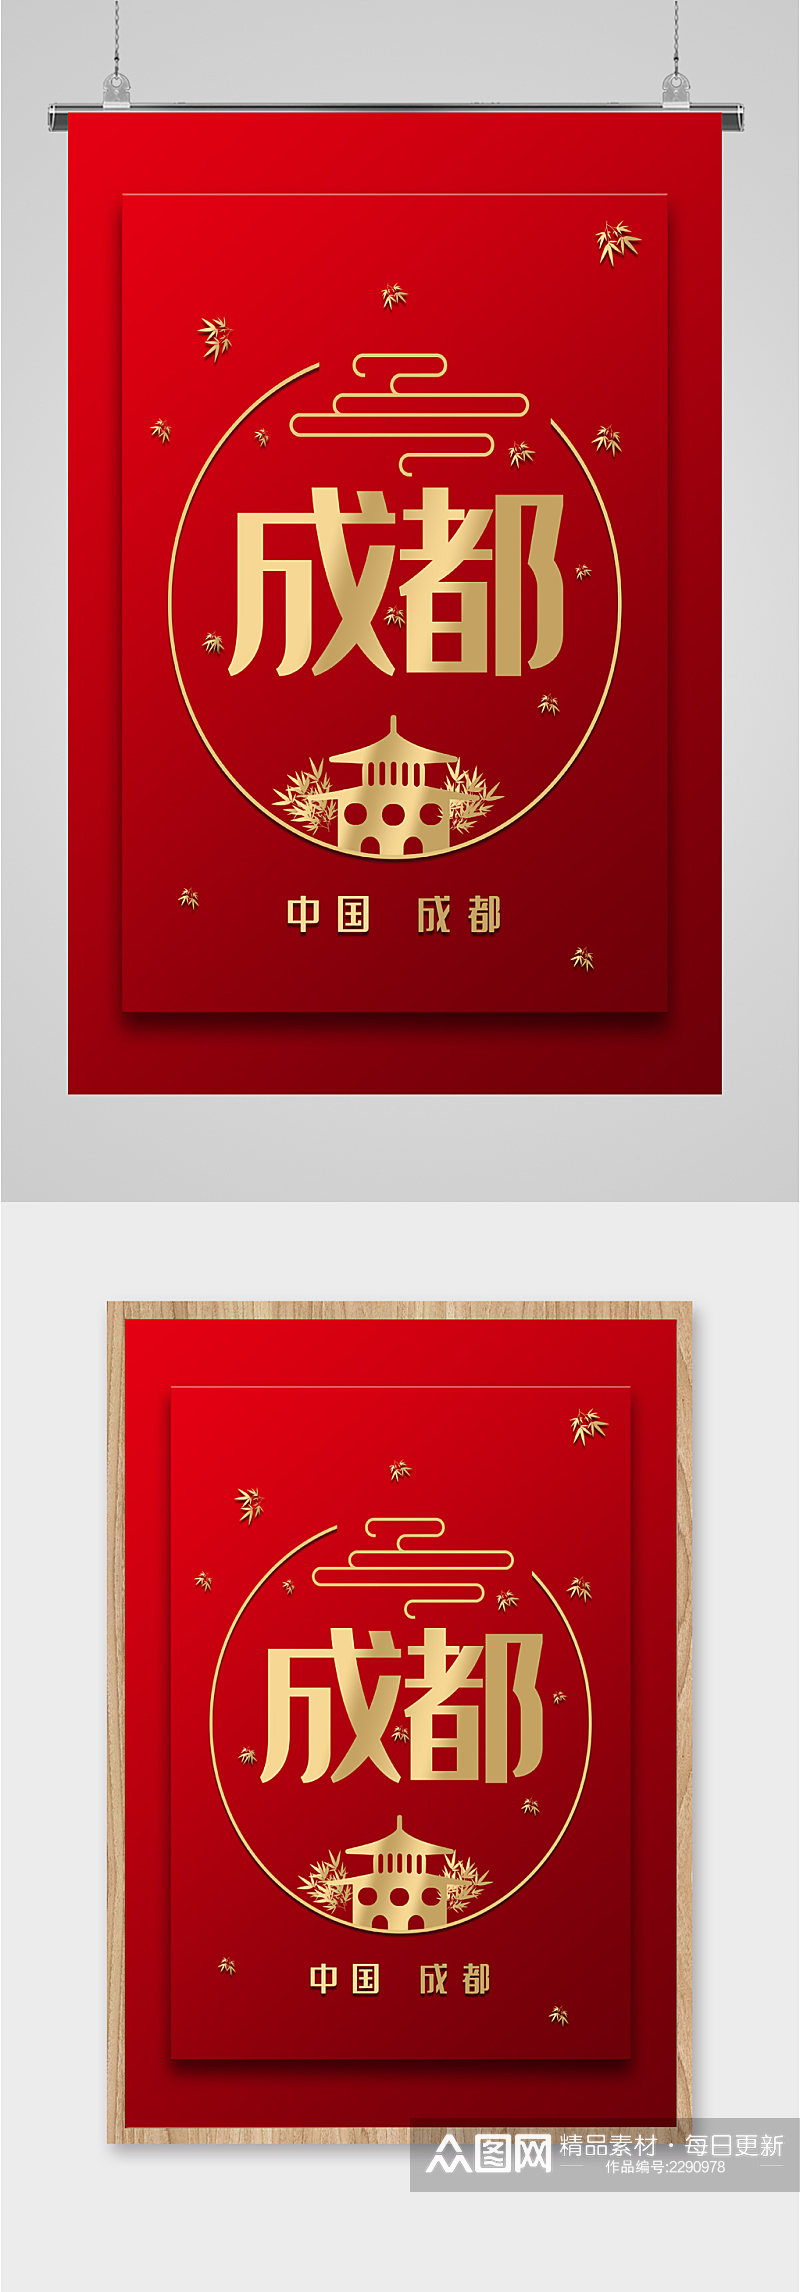 中国成都红色背景海报素材